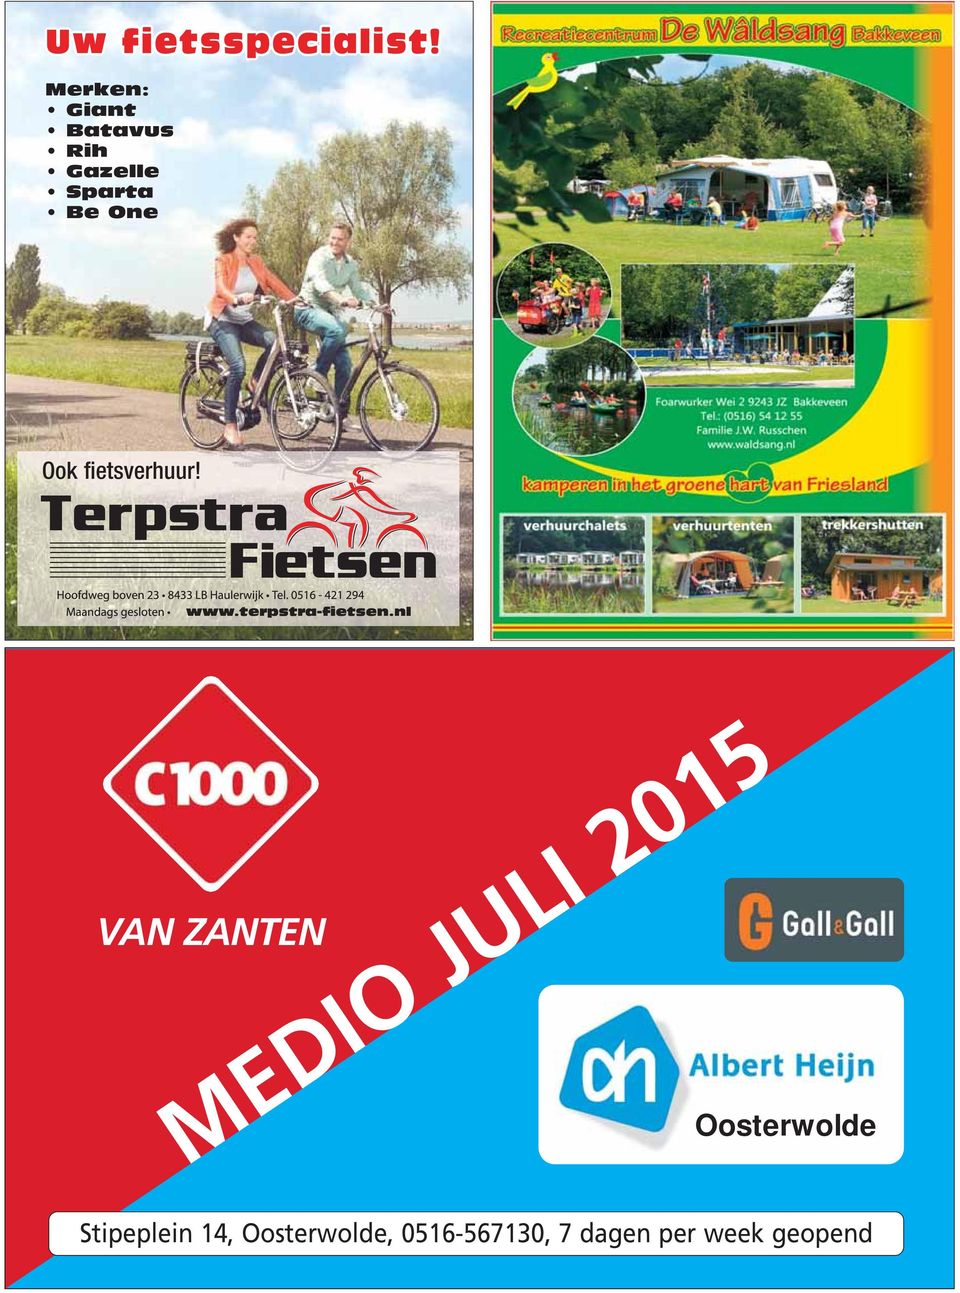 VAN ZANTEN MEDIO JULI 2015 Oosterwolde